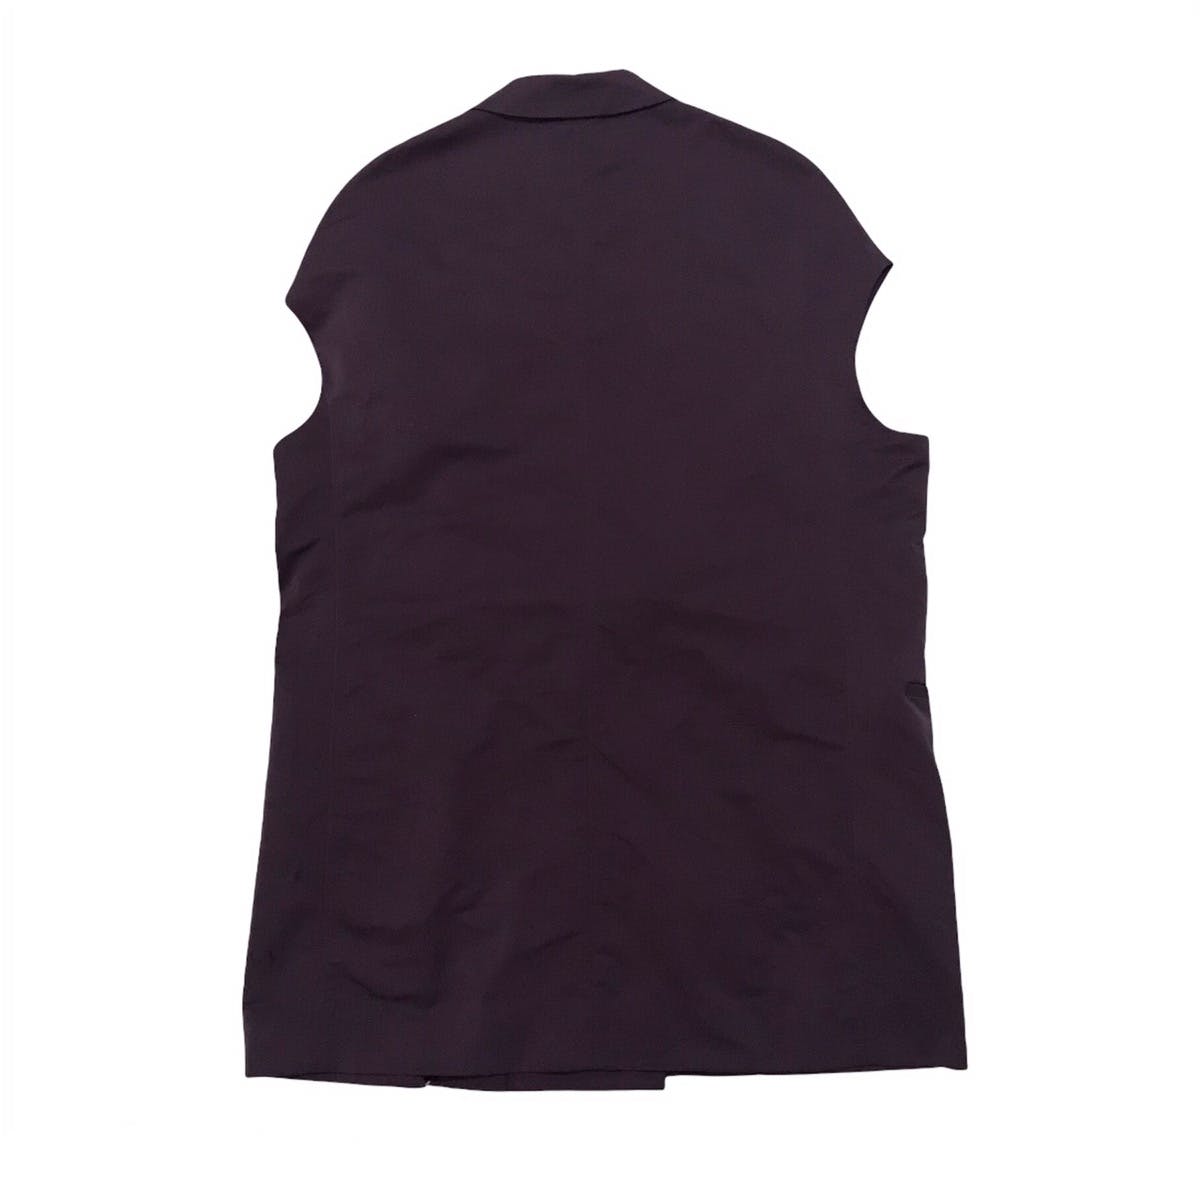 Marni Women Sleeveless Jacket Style Made in Italy - 2